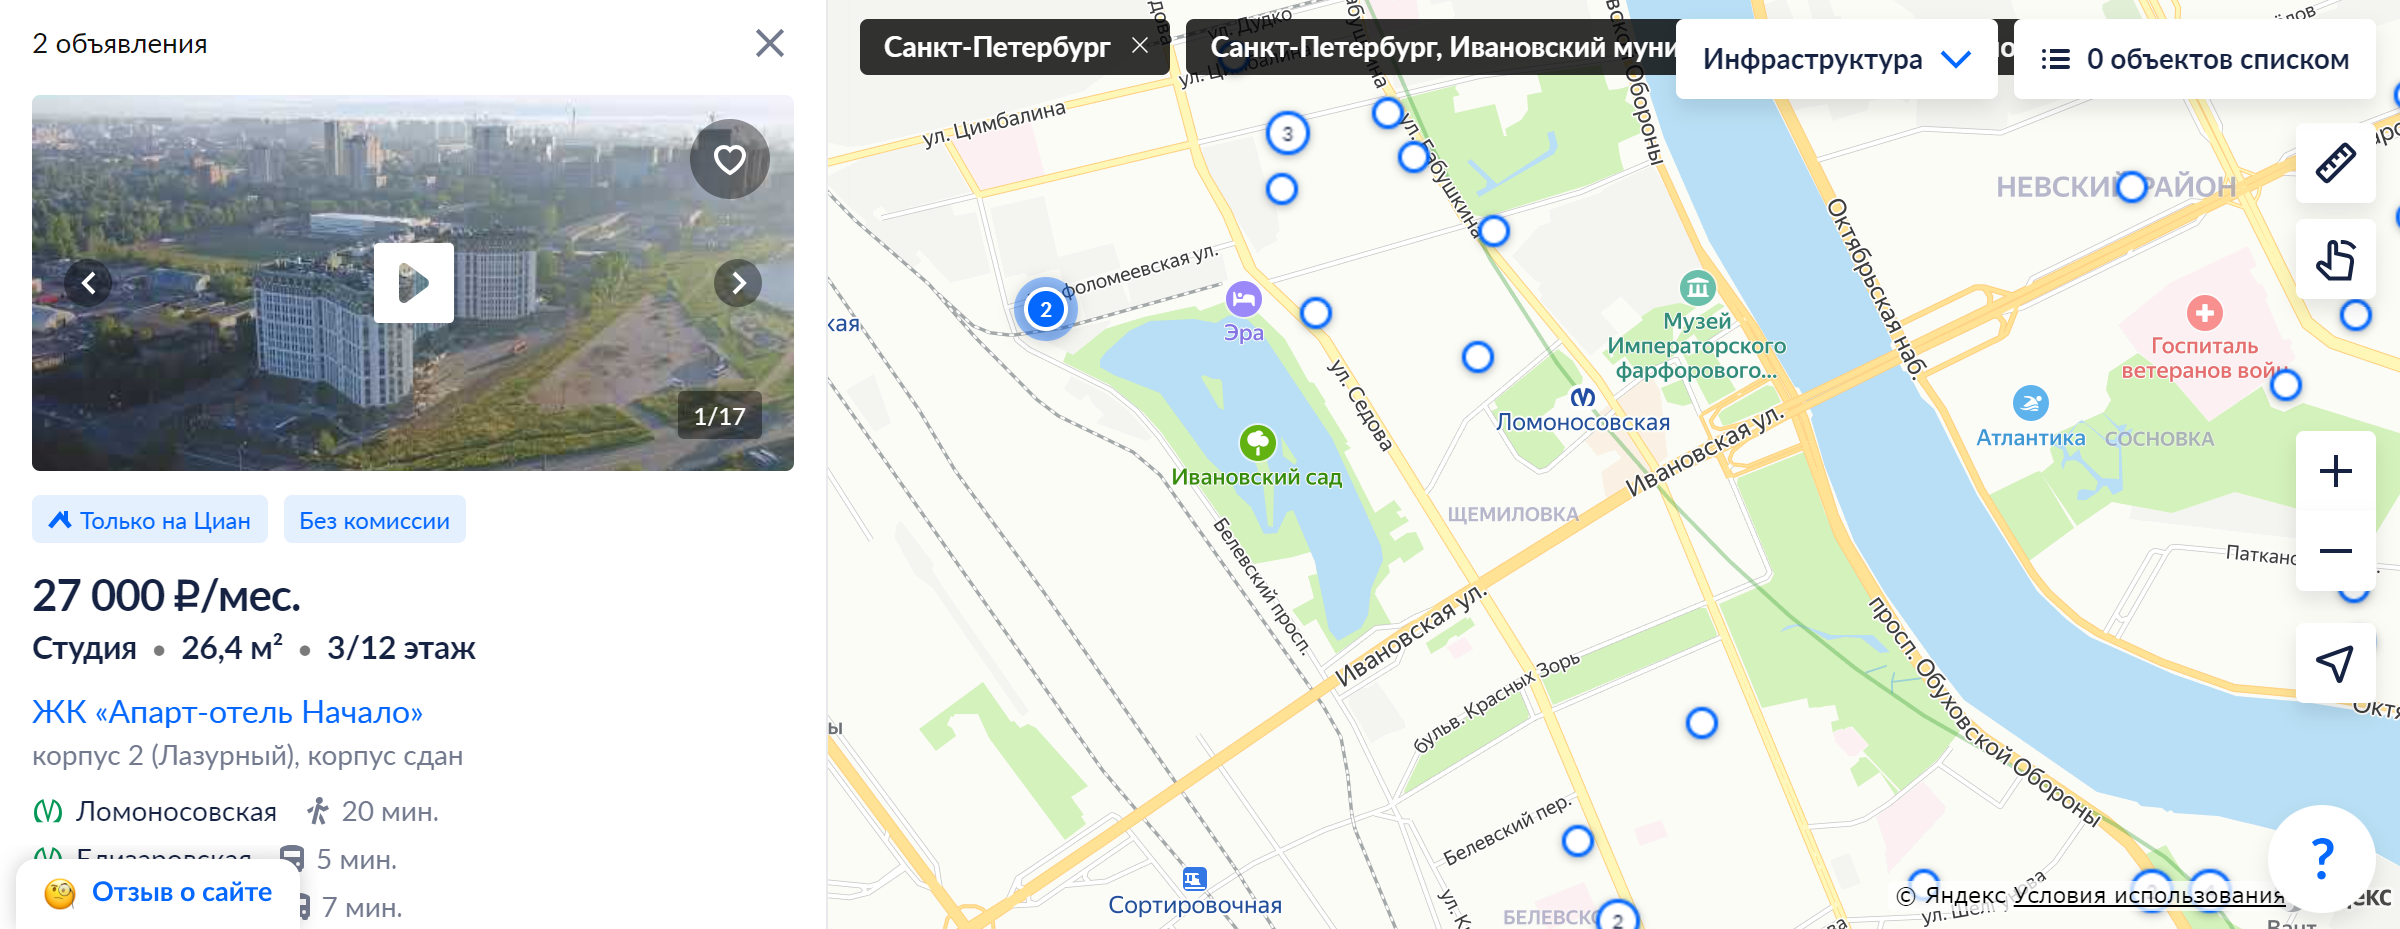 Вот как выглядит карта аренды жилья в районе Ивановского карьера и метро «Ломоносовская» в 2023 году. Видно, что инфраструктура здесь хуже, рядом железная дорога, и объявлений почти нет. Жилье сдают недорого — в районе 27 000 ₽ в месяц за студию. Источник: cian.ru